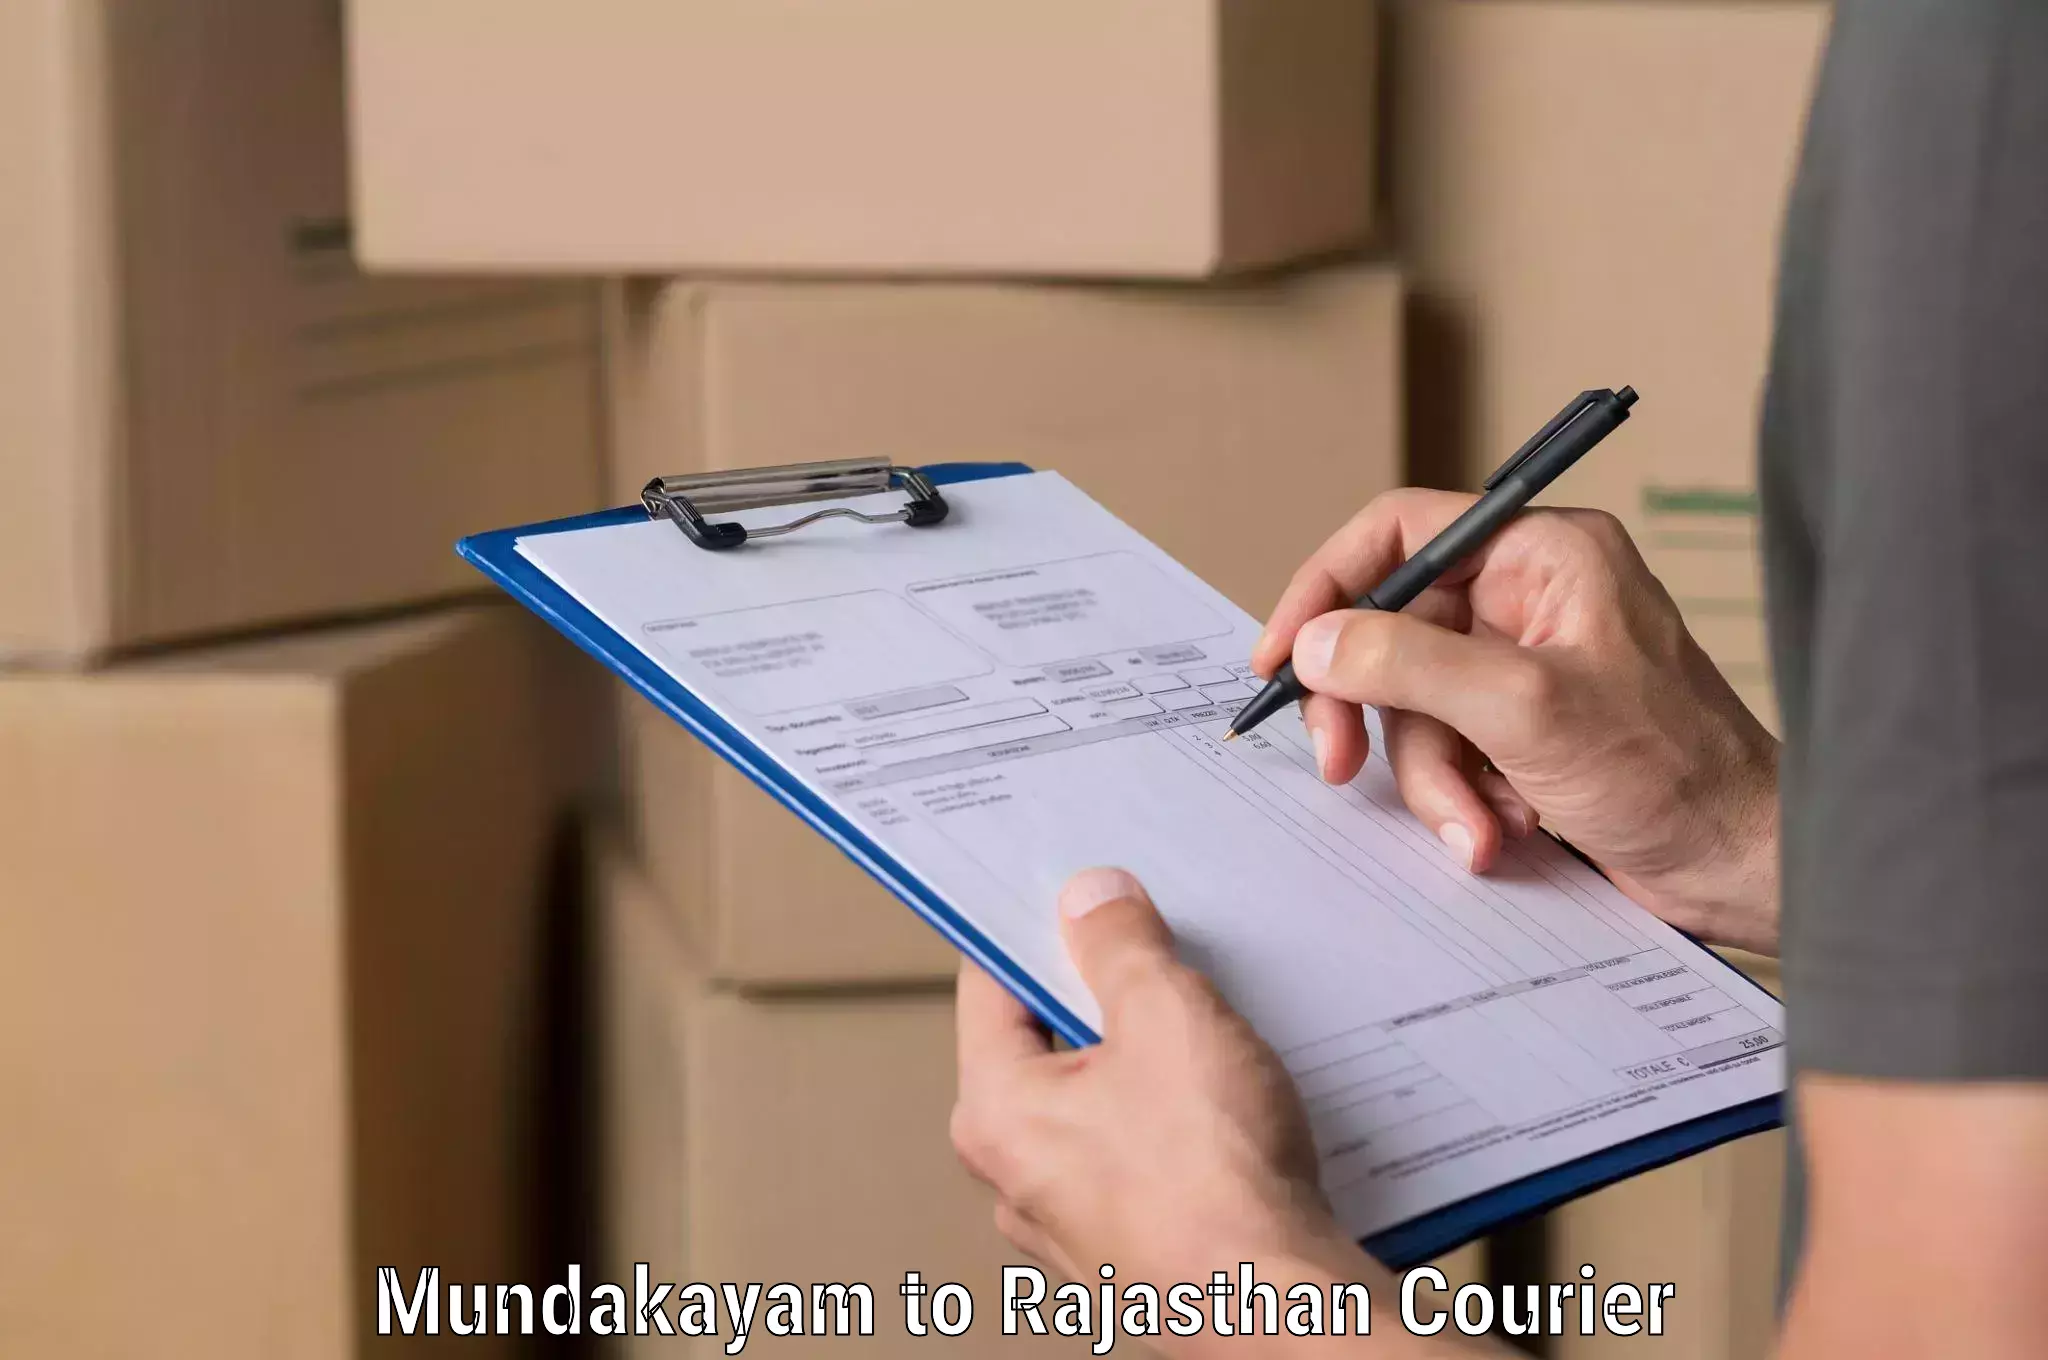 Budget-friendly shipping Mundakayam to Tijara